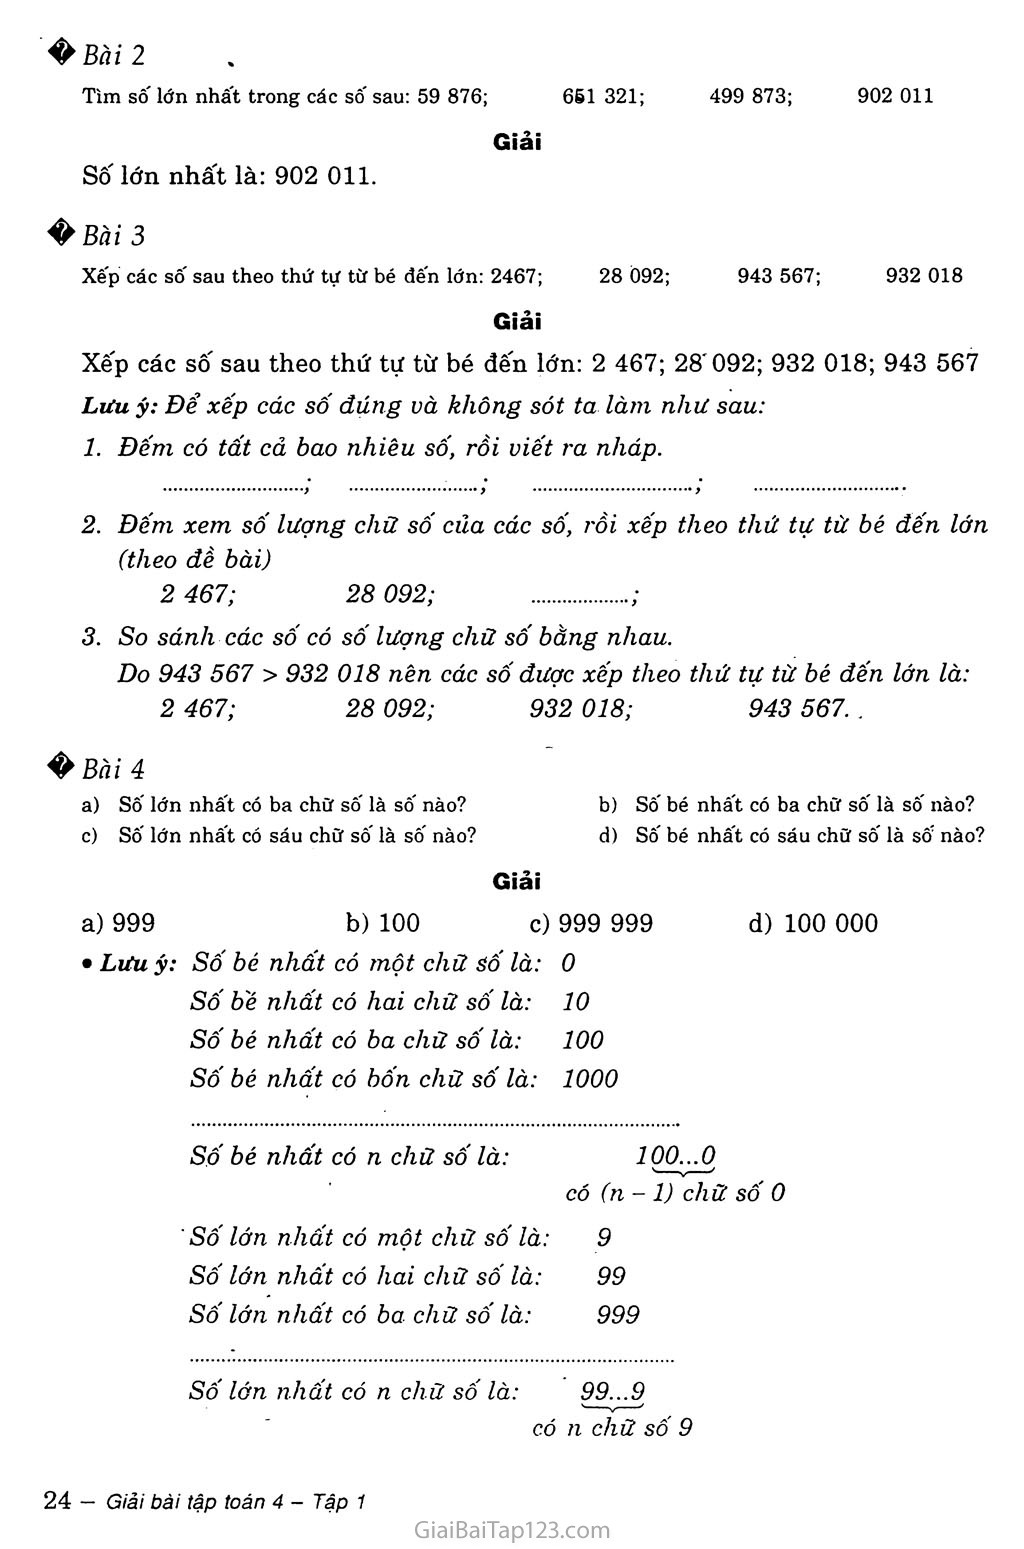 Bài 9: So sánh các số có nhiều chữ số trang 2